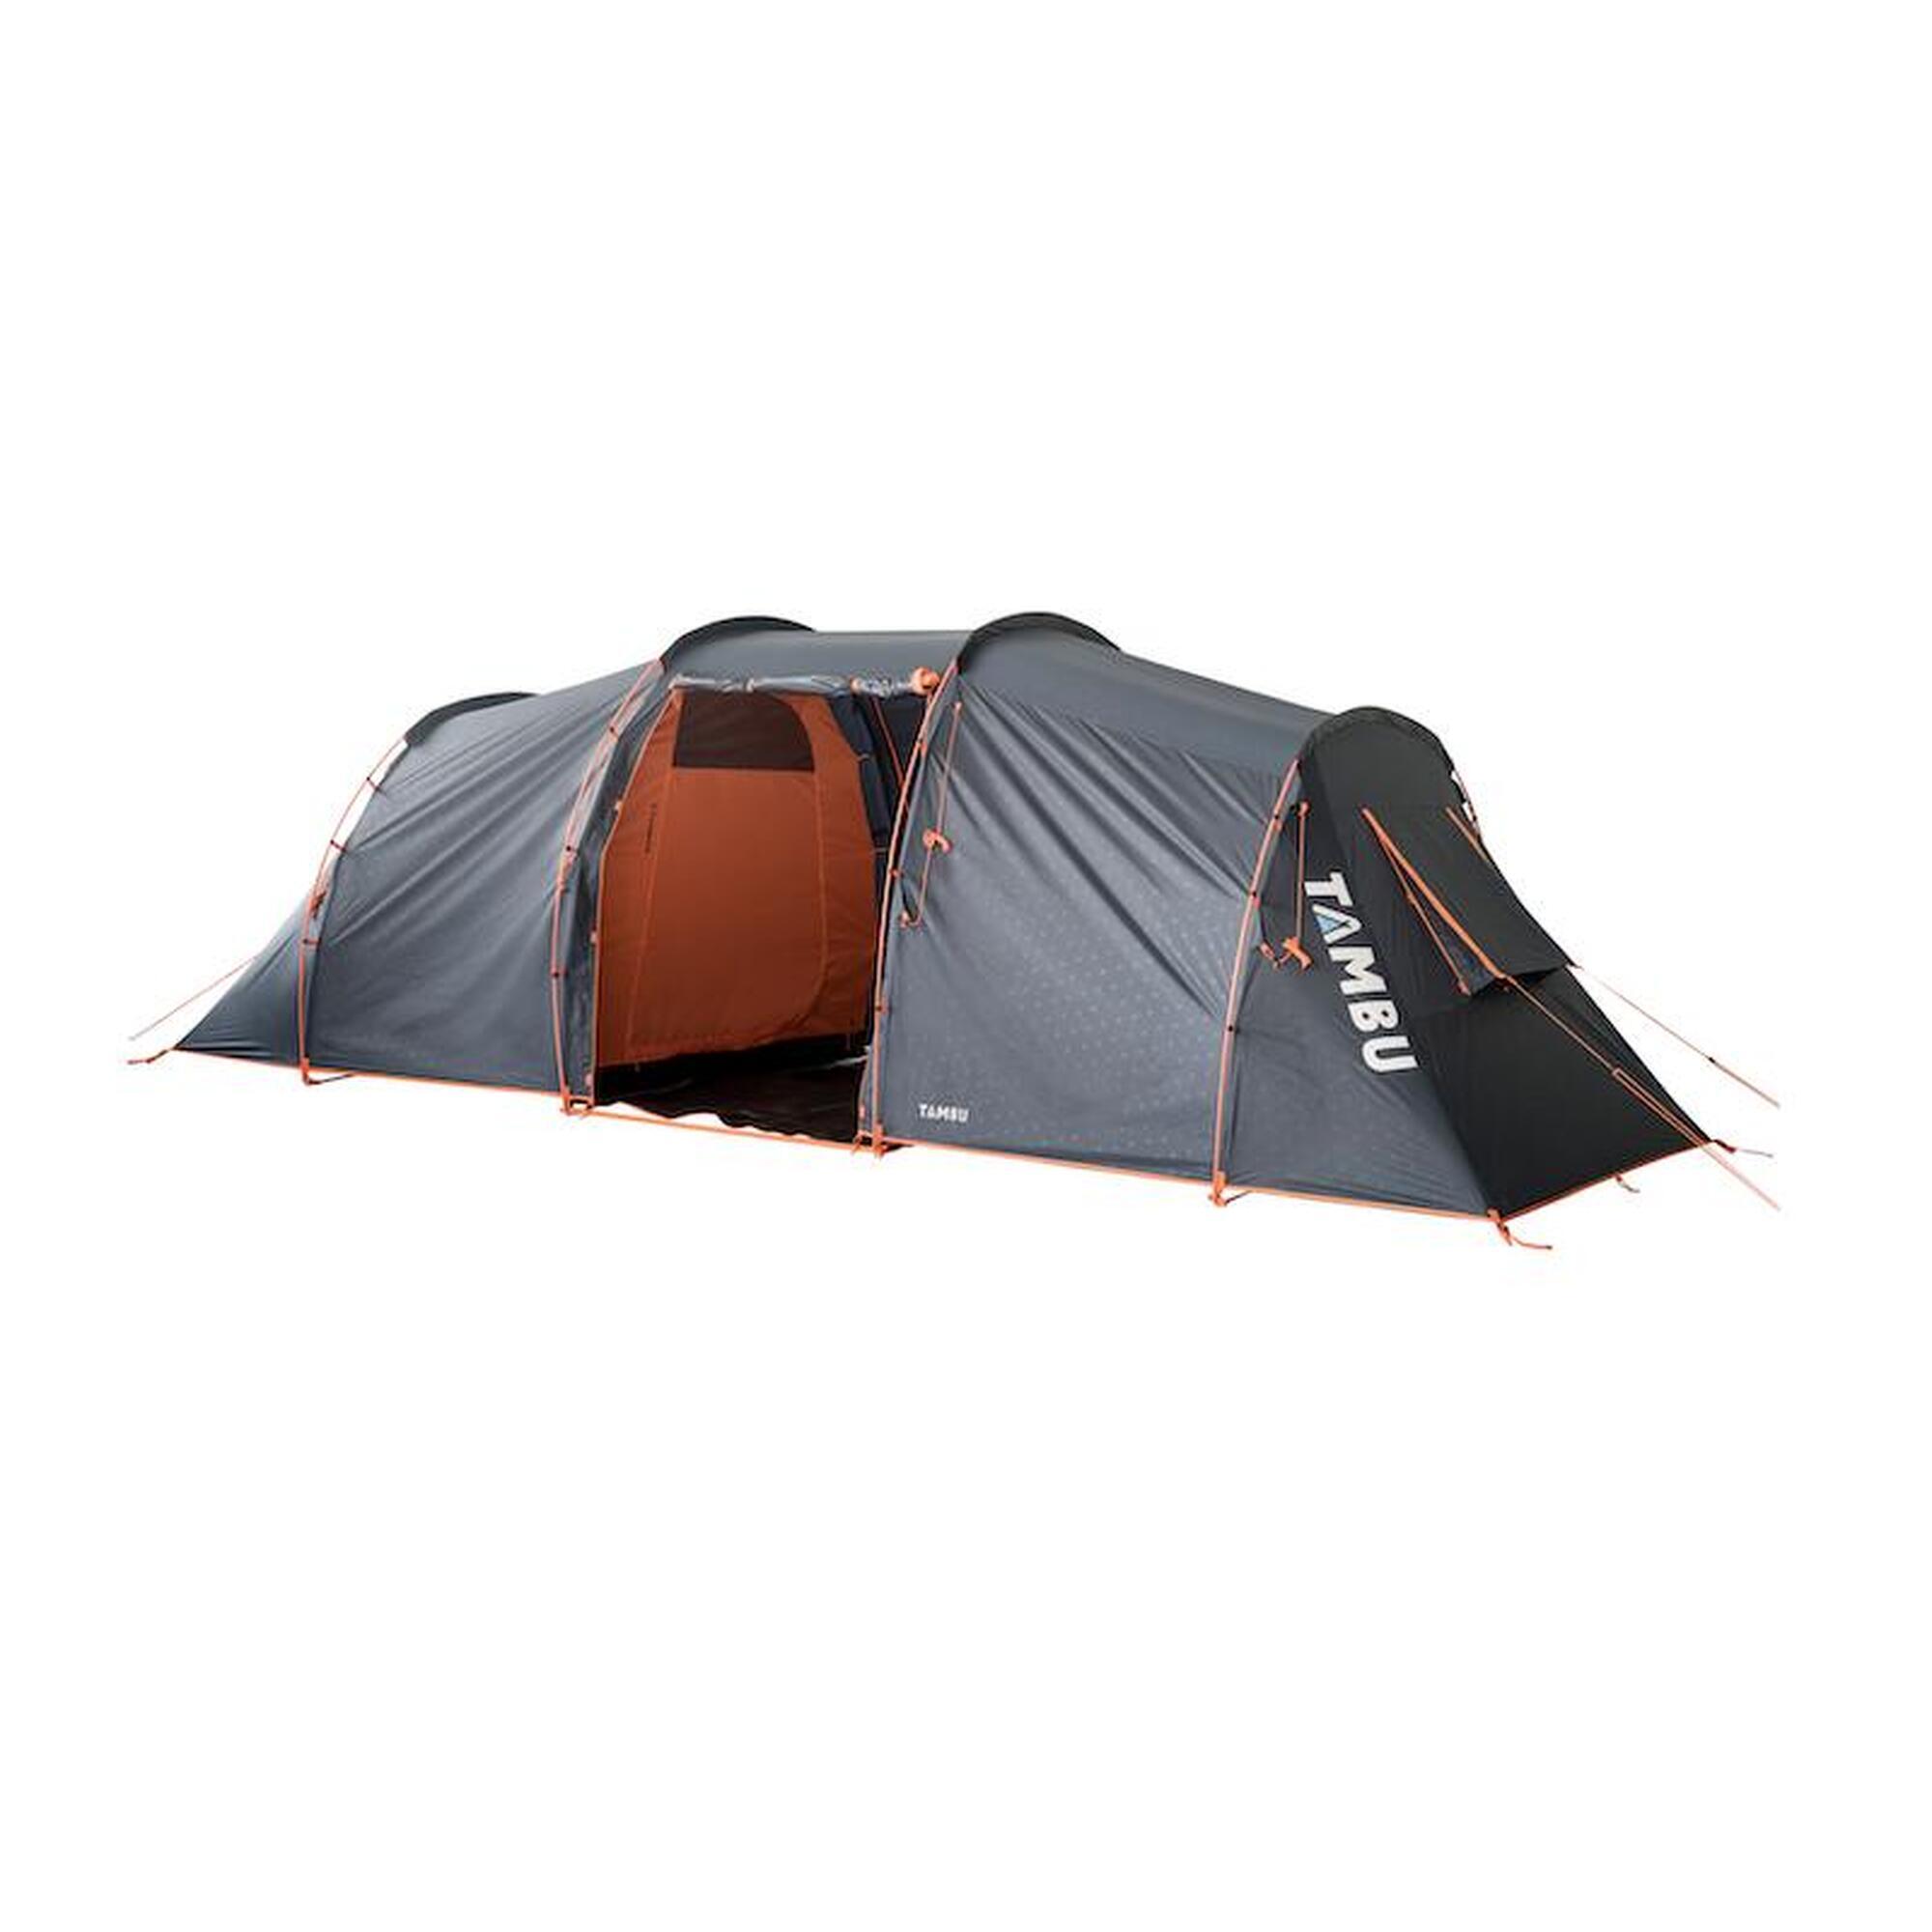 Campingzelte | Große Auswahl an Zelten preiswerten